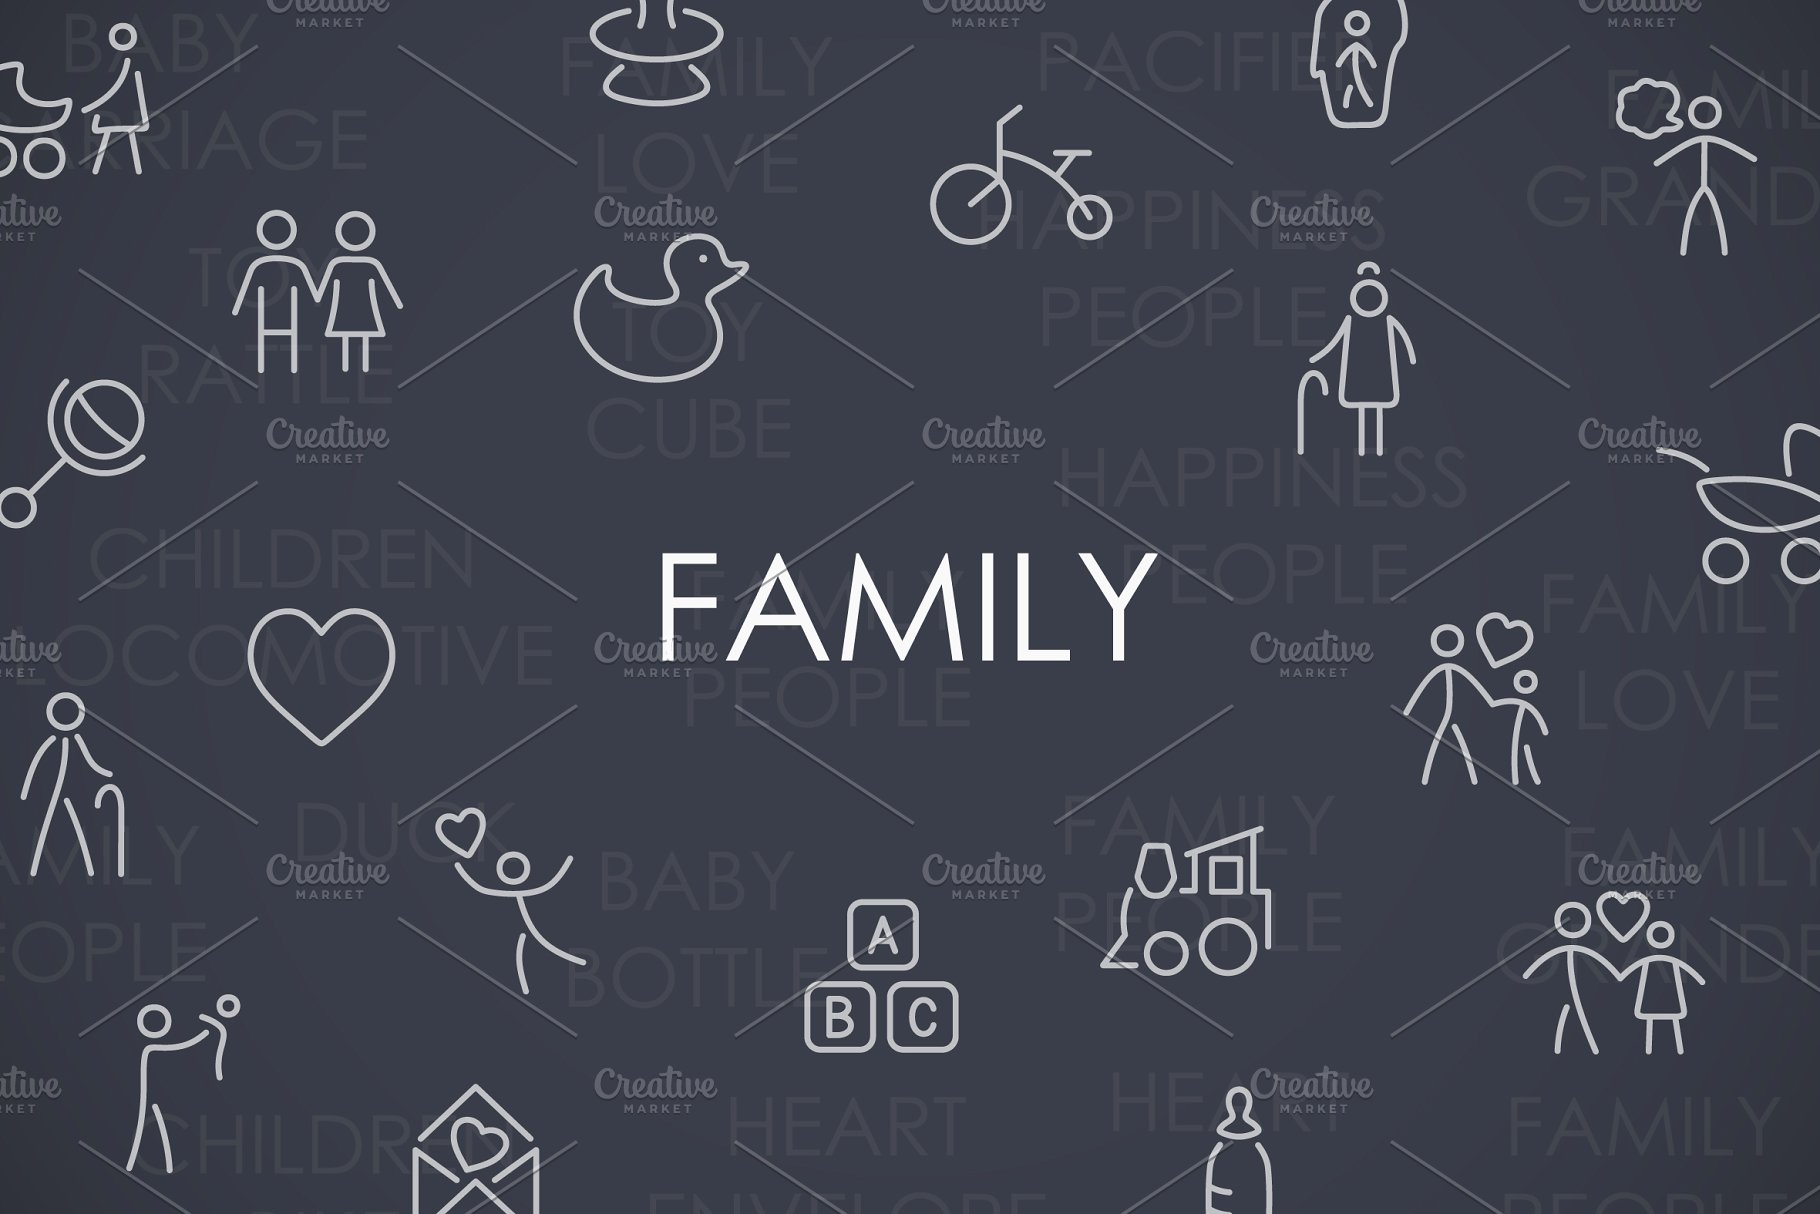 家庭主题图标素材 Family thinline icons